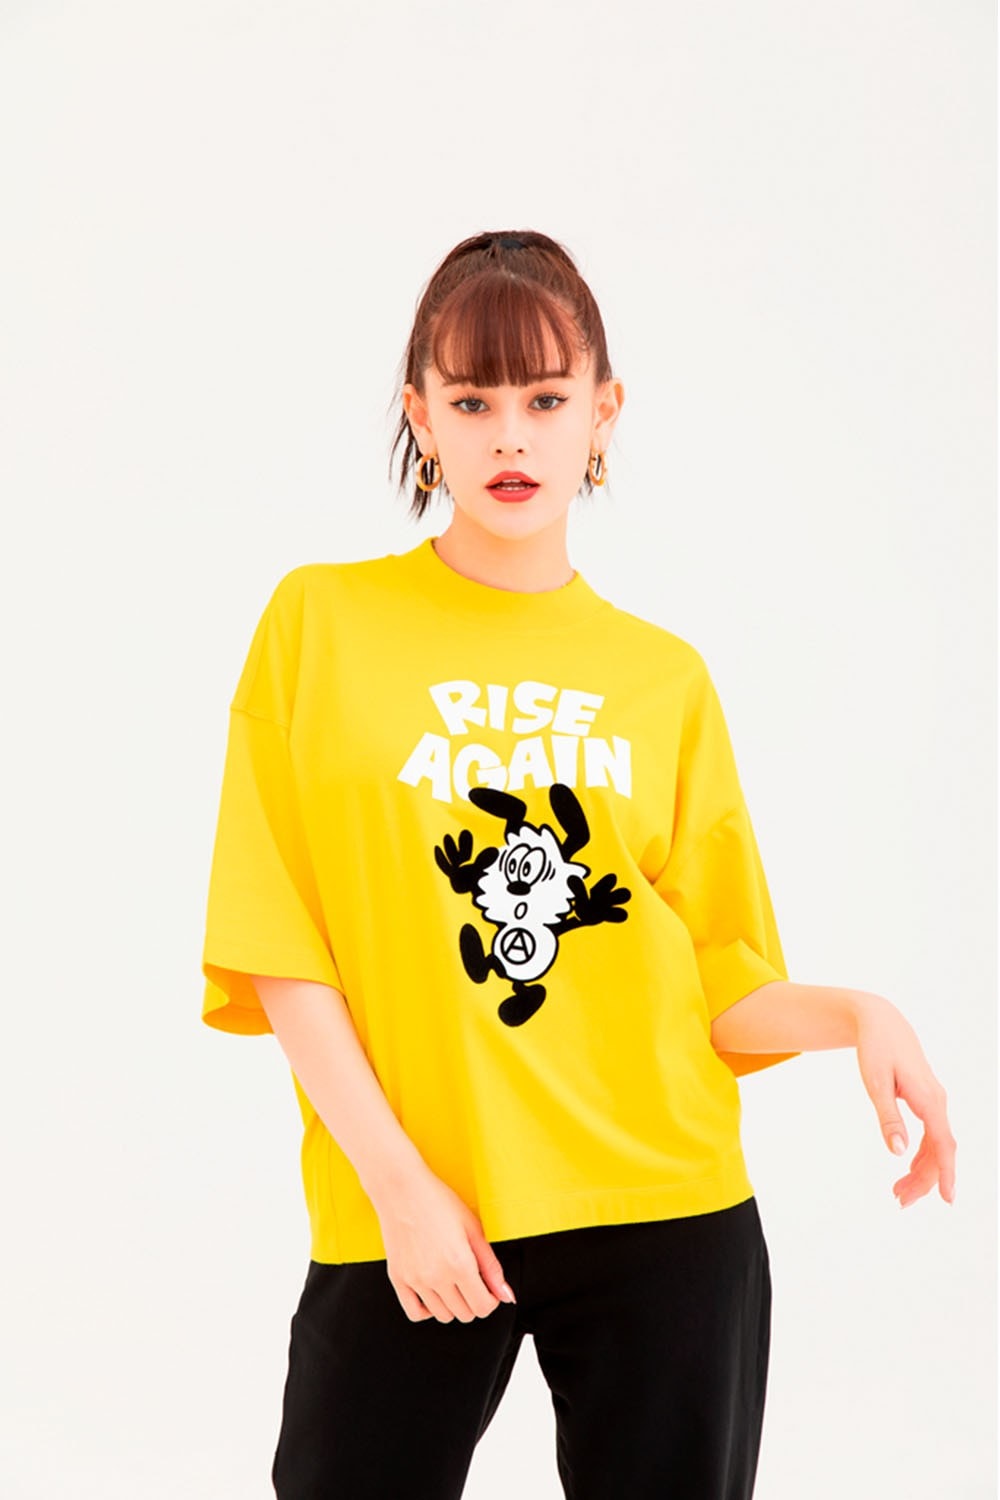 베르디 유니클로 UT 협업 컬렉션 룩북 아이템 인터뷰 니고 2019 봄 여름 키즈 티셔츠 